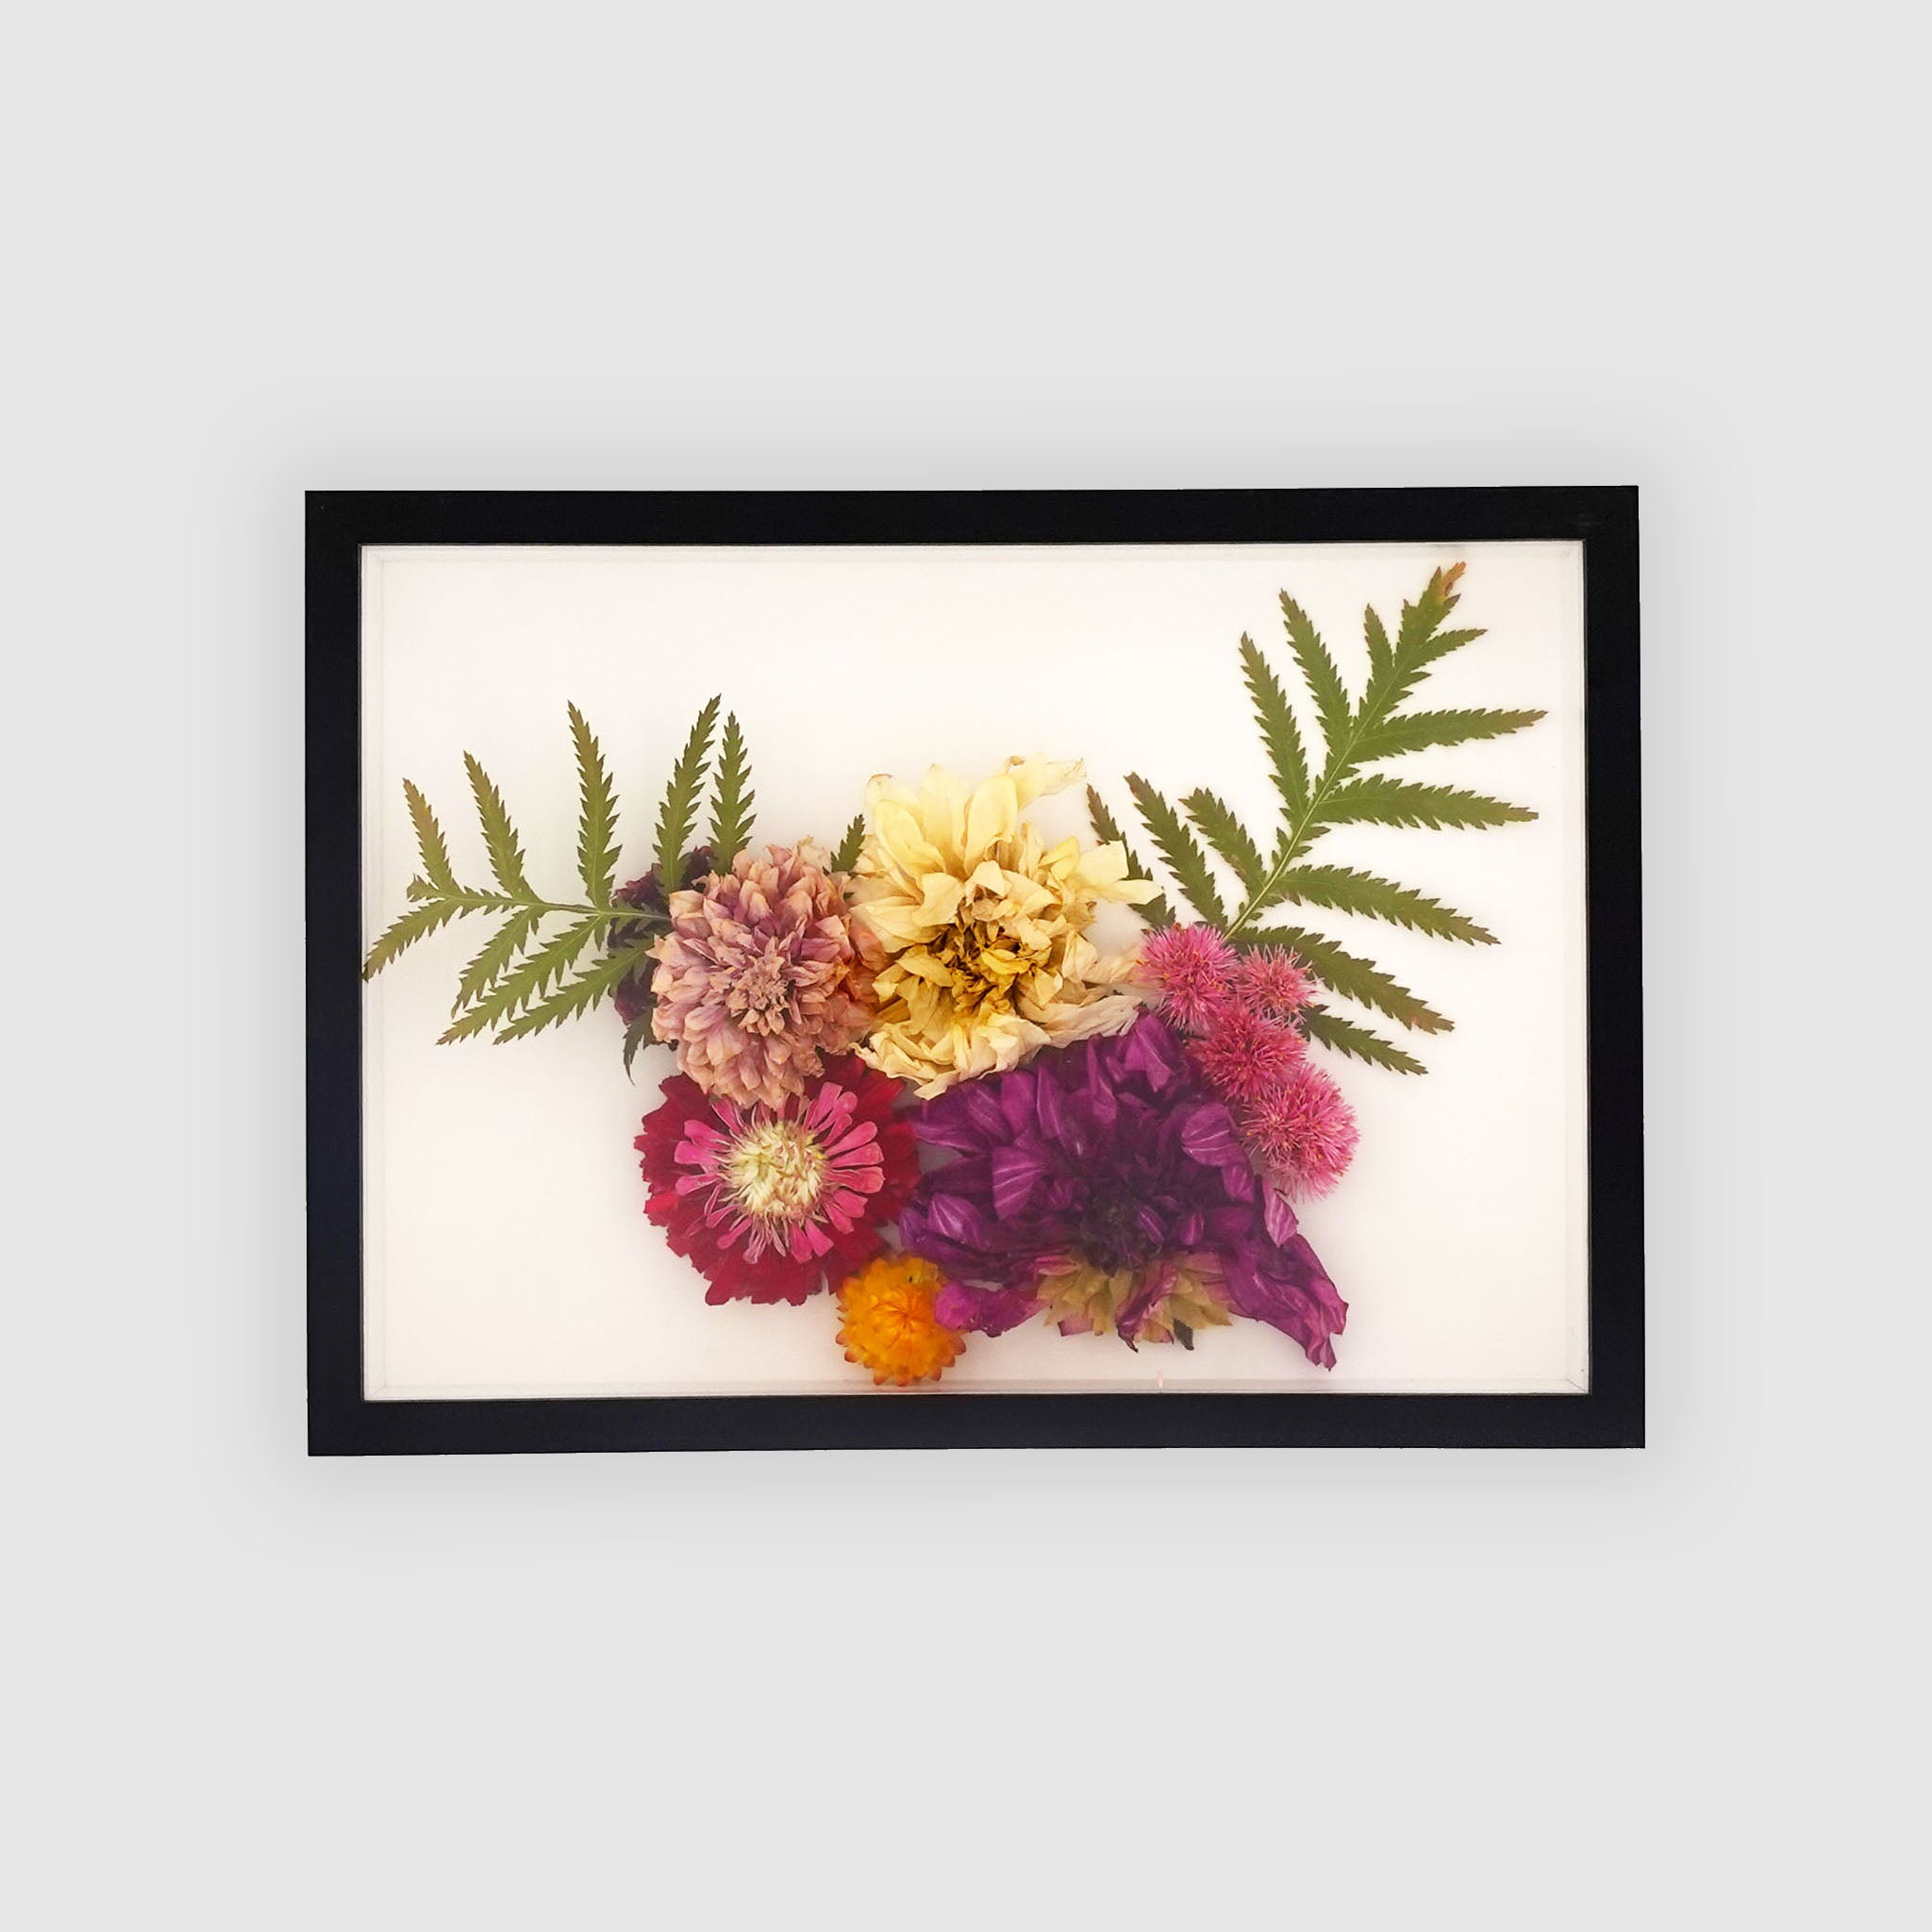 3D Shadow Box Flower Art Frames